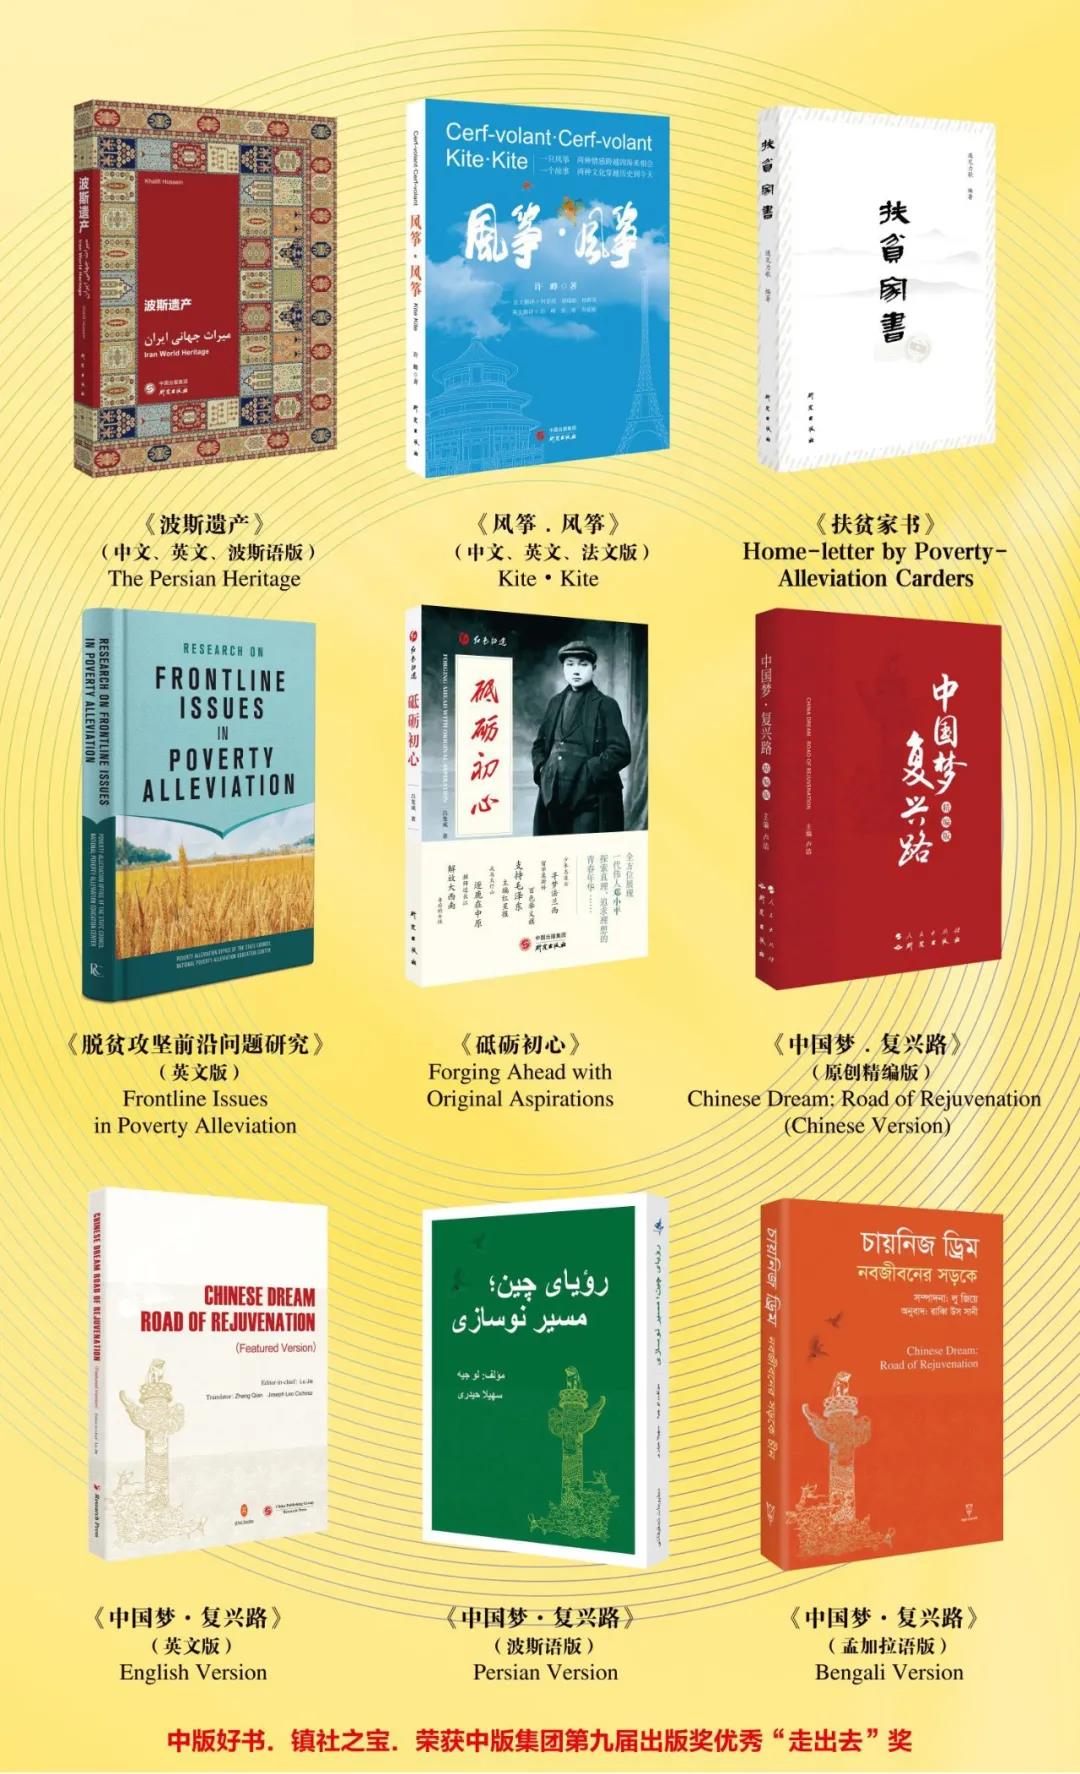 第28届北京国际图书博览会盛大开幕